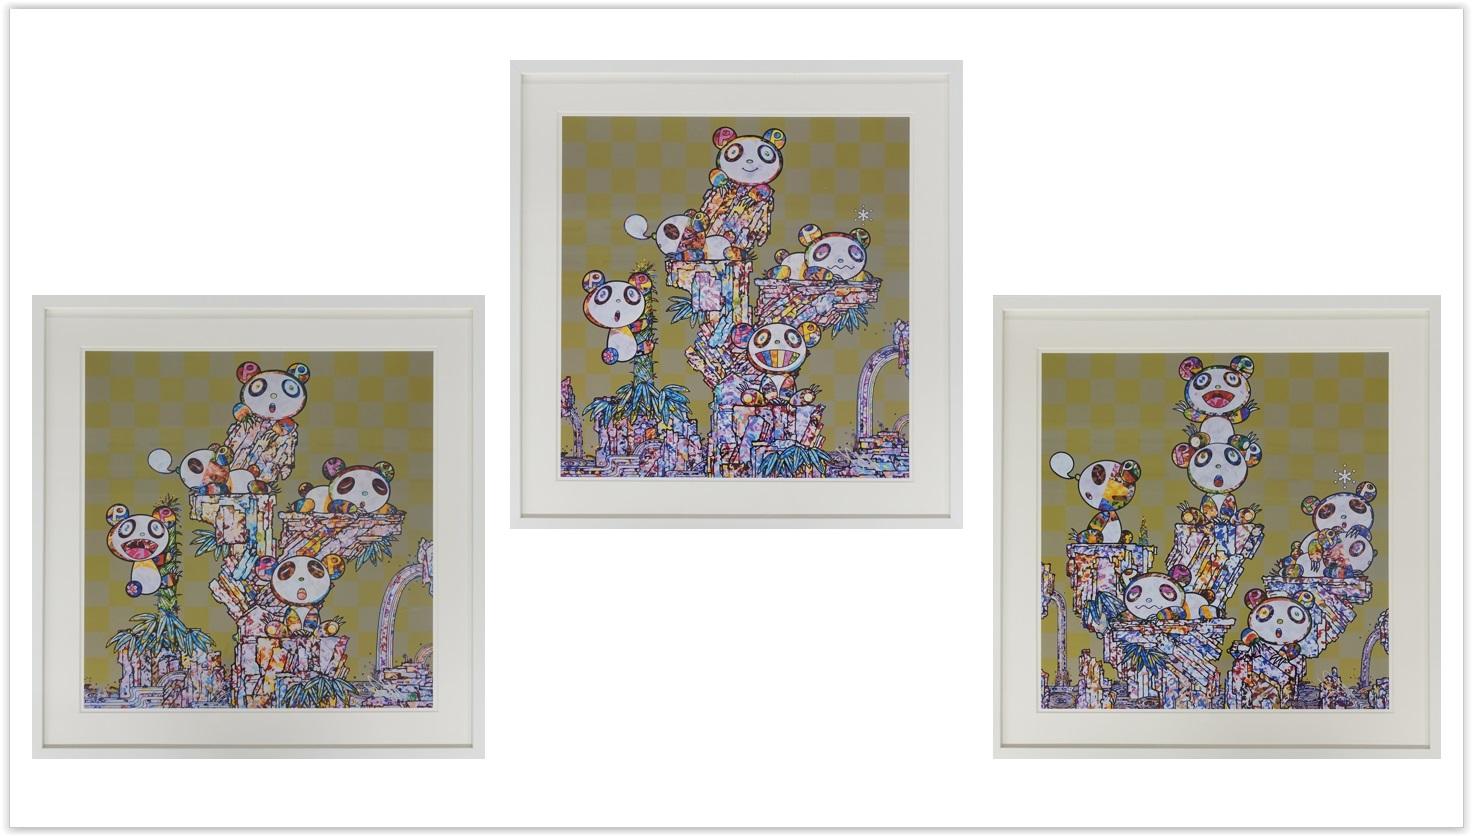 Figurative Print Takashi Murakami - triptyque Panda Child (3 tirages). Édition limitée de Murakami signée, encadrée